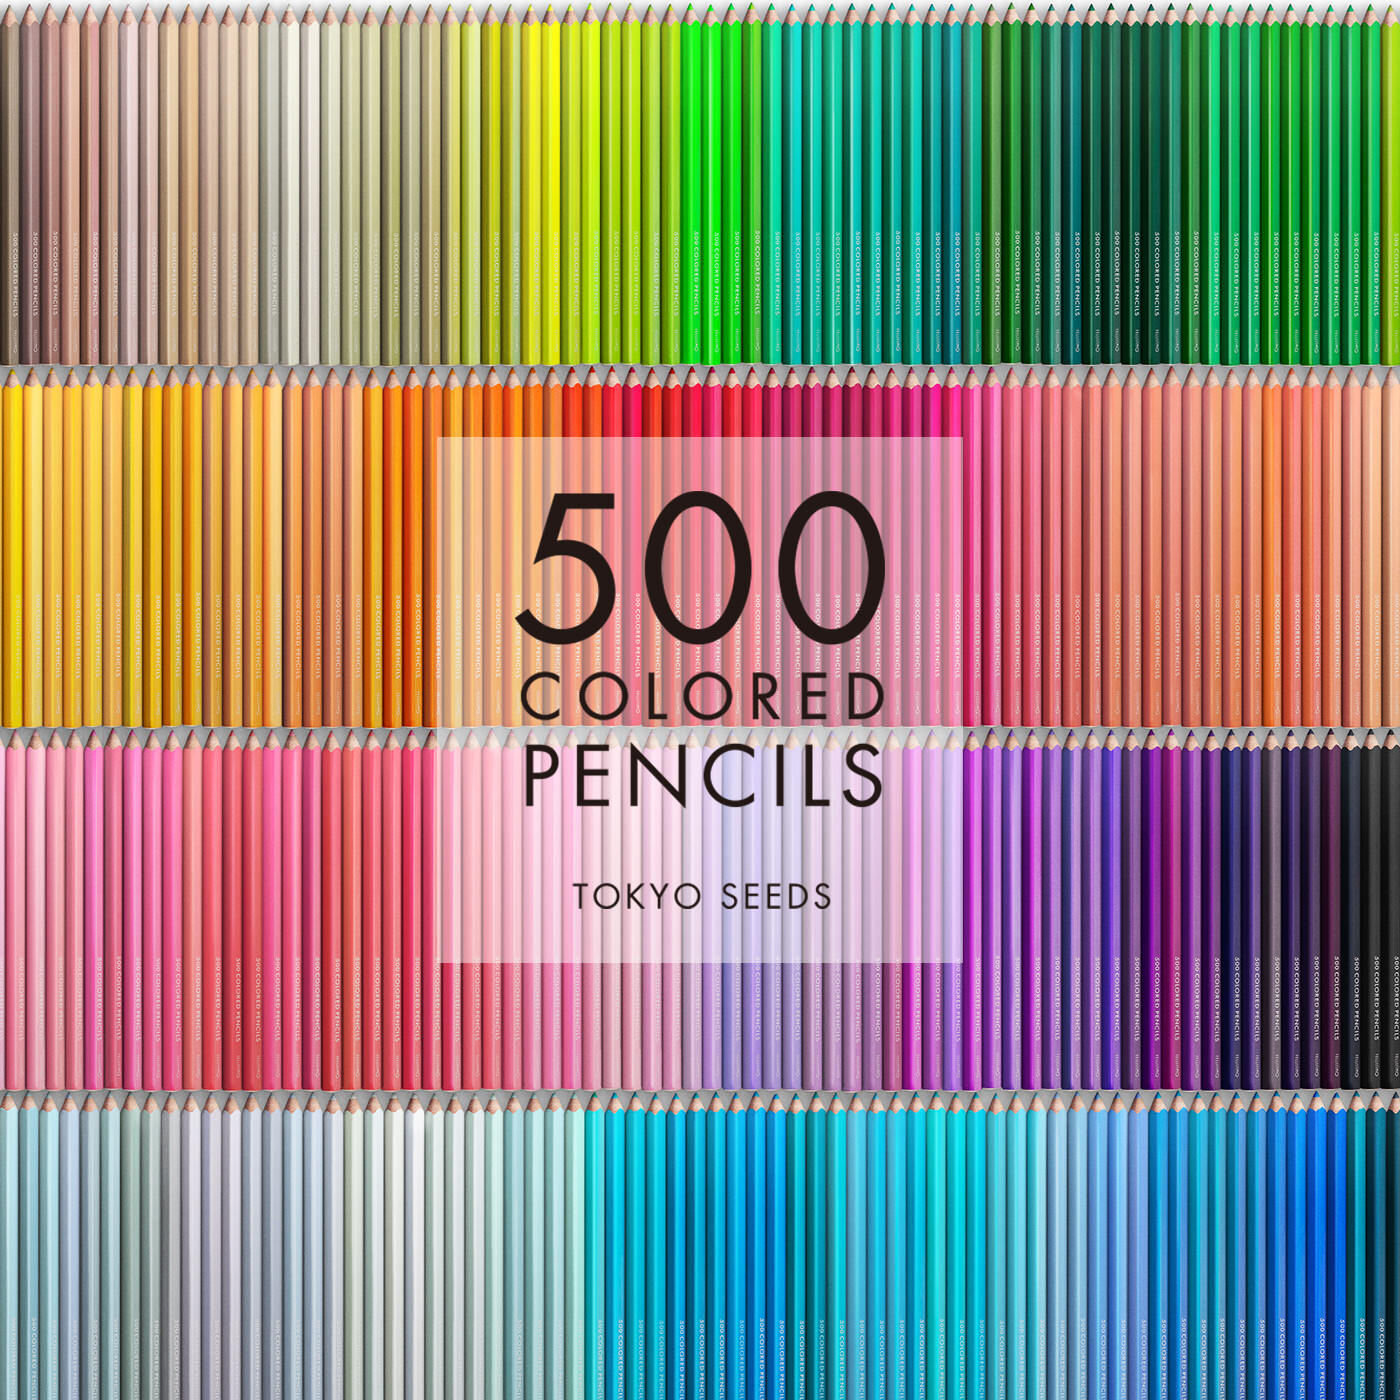 Real Stock|【24/500 PROVENCE PEACH】500色の色えんぴつ TOKYO SEEDS|1992年、世界初の「500色」という膨大な色数の色えんぴつが誕生して以来、その販売数は発売当初から合わせると、世界55ヵ国10万セット以上。今回、メイド・イン・ジャパンにこだわり、すべてが新しく生まれ変わって登場しました。